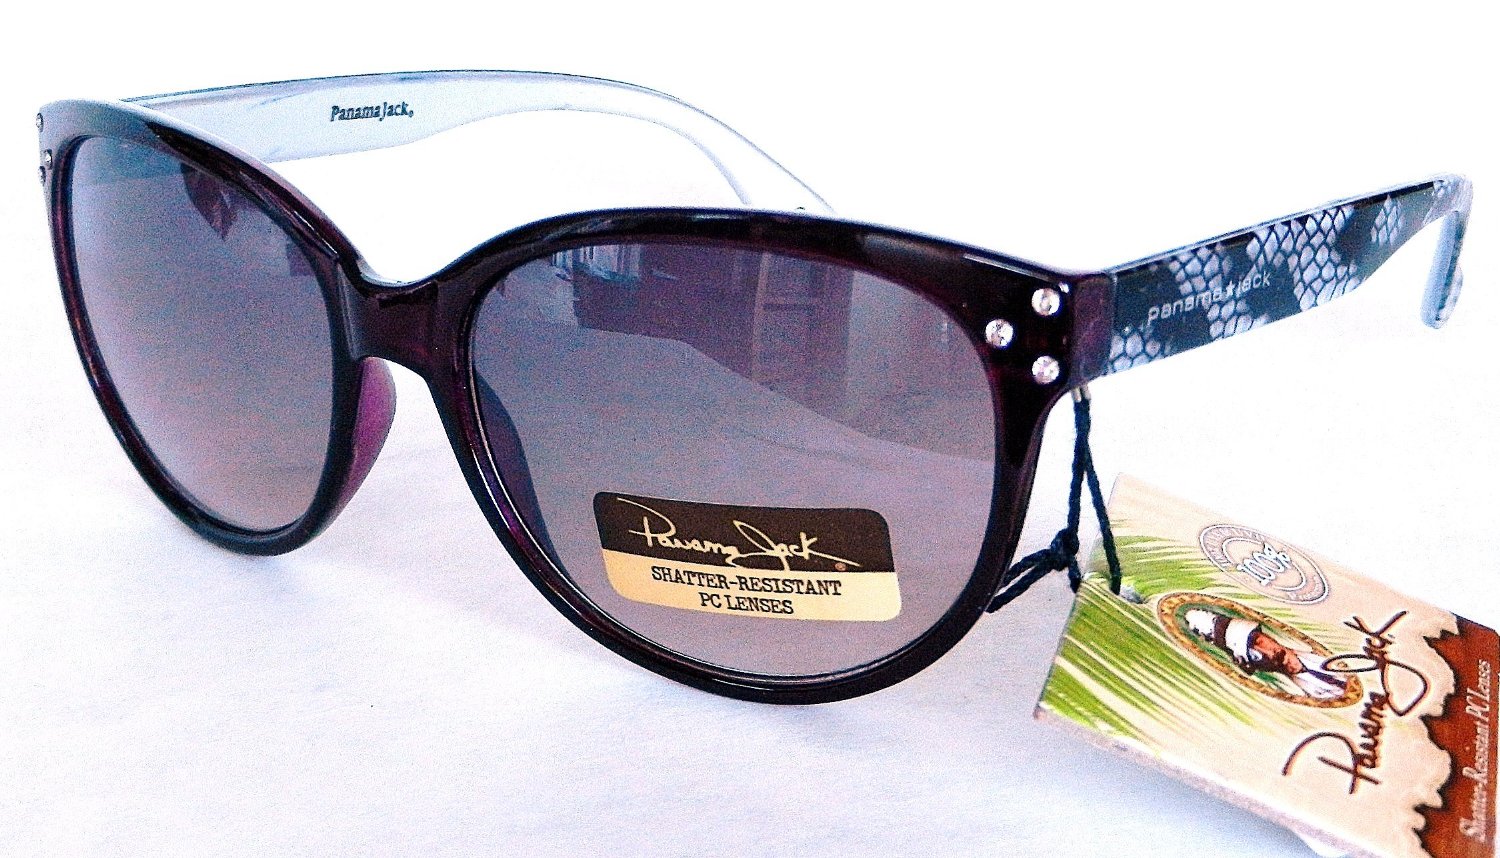 Cool Panama Jack Sunglasses